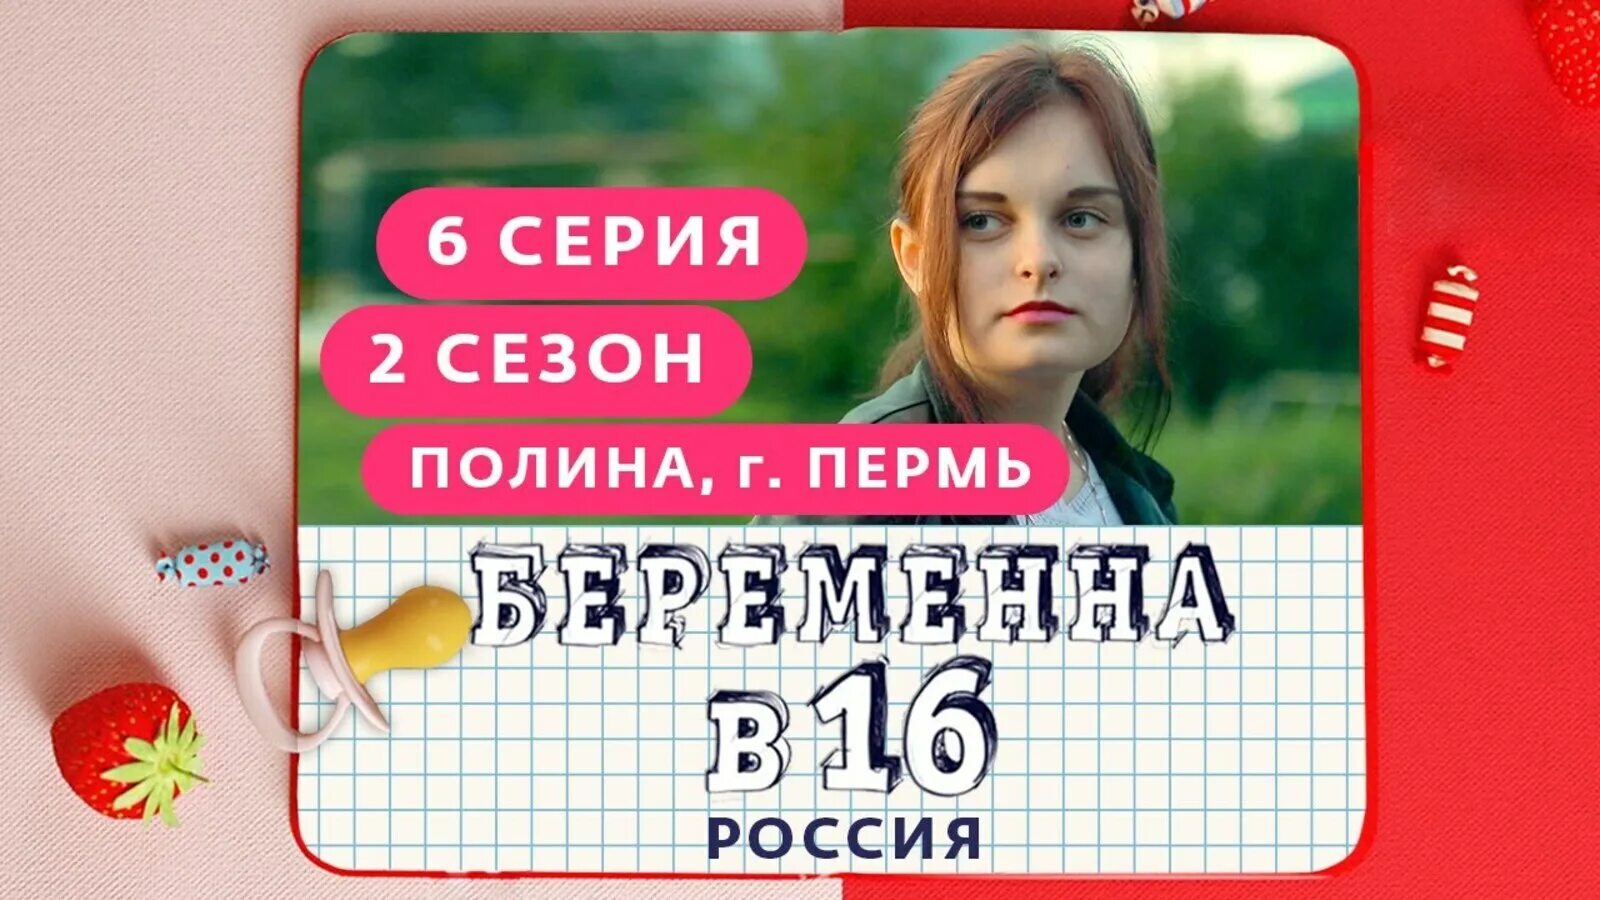 Мама в 16 телеканал ю новые. Беременна в 16 русская версия.